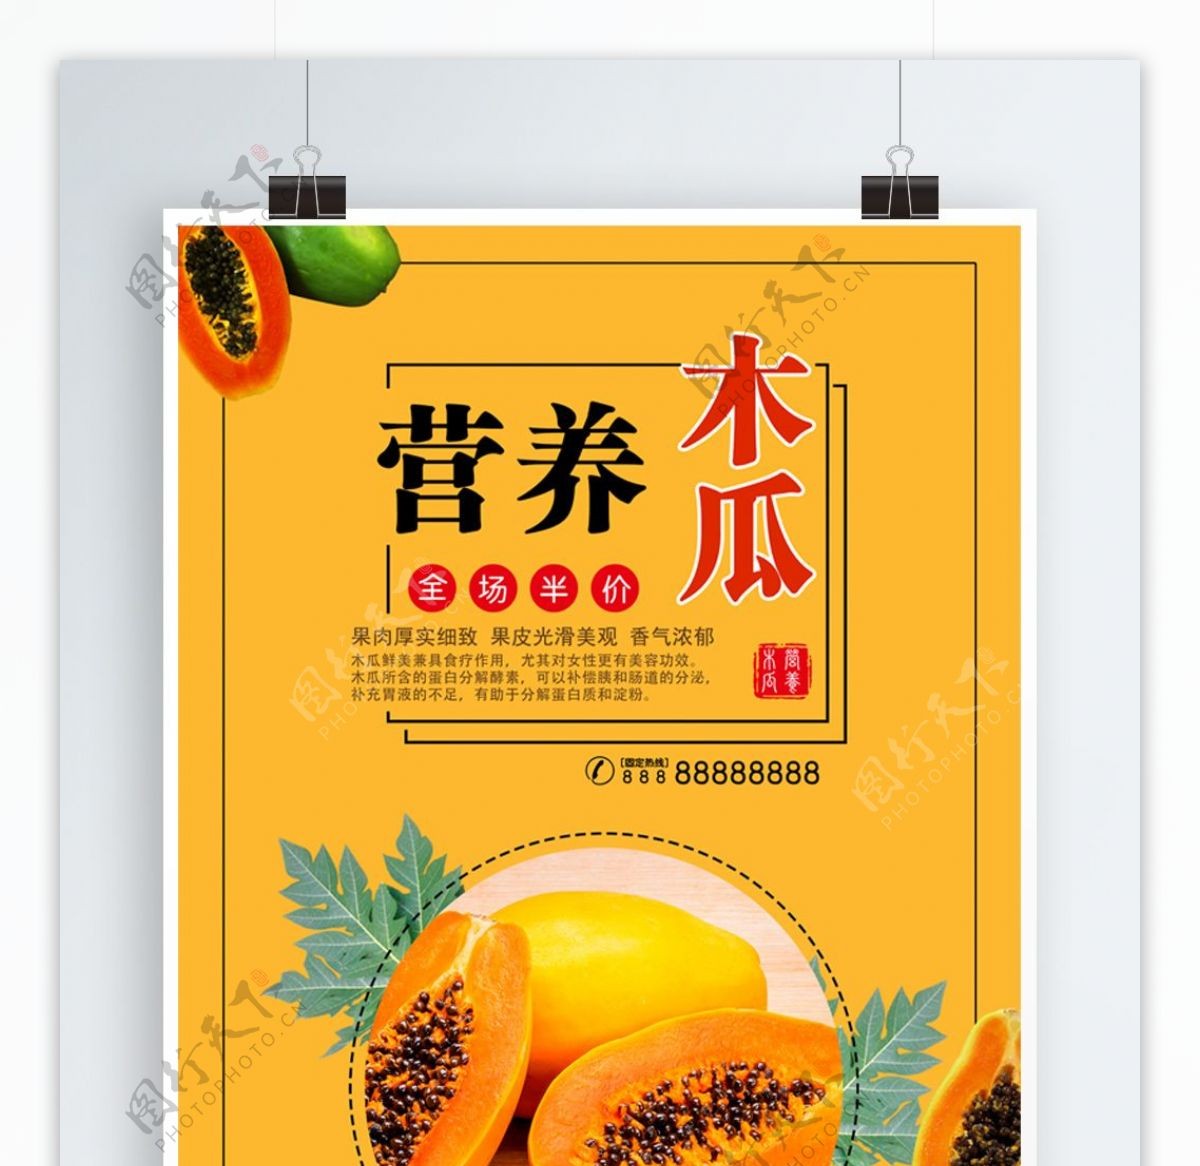 黄色营养木瓜促销宣传海报